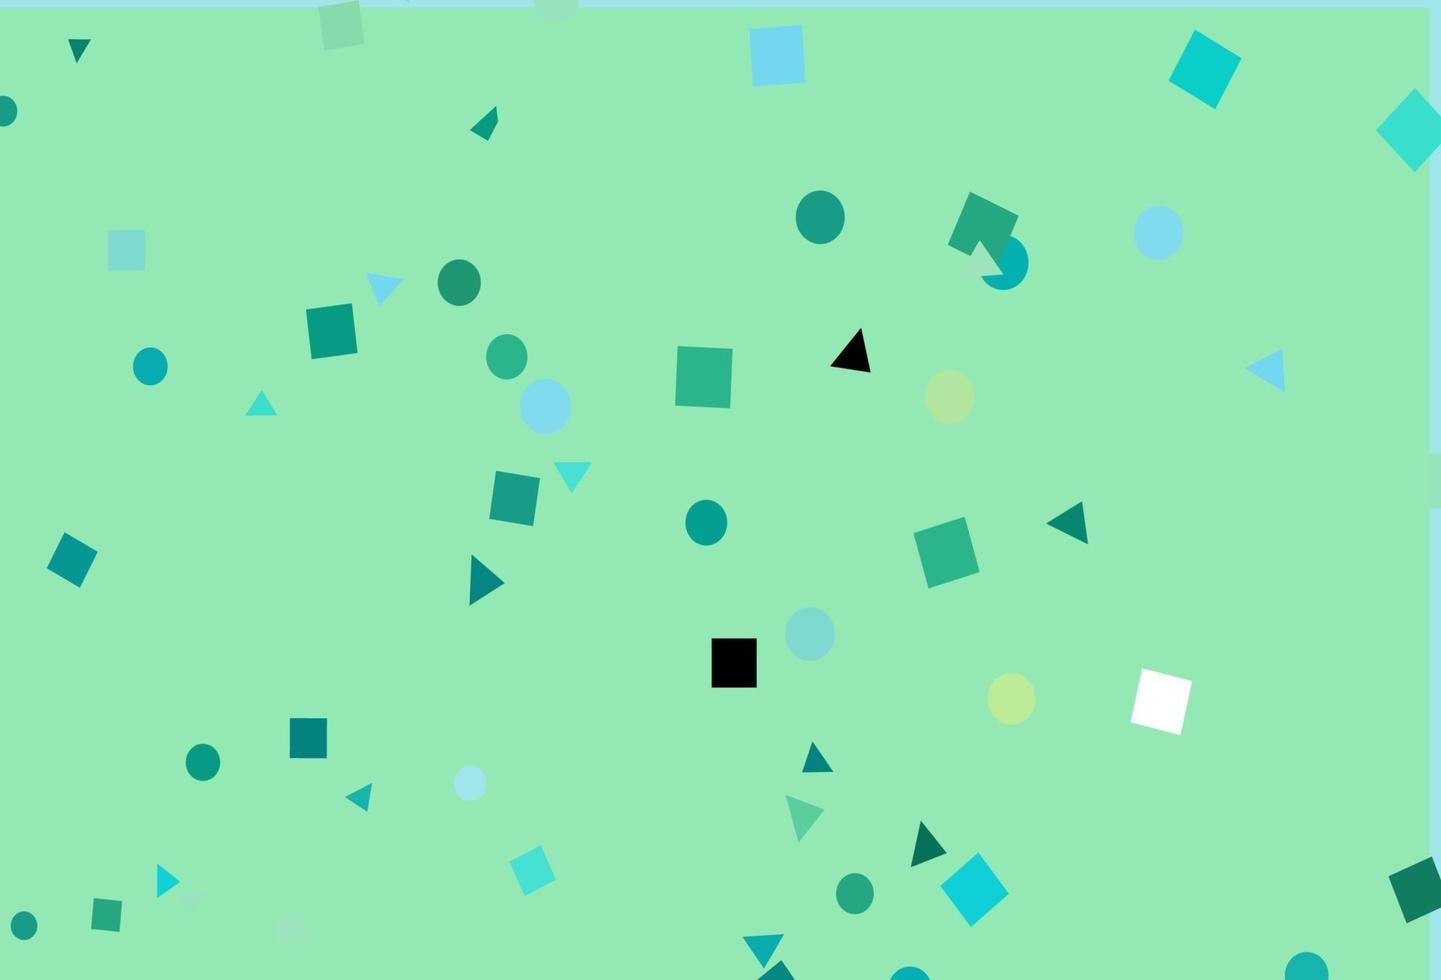 textura de vetor verde e amarelo claro em estilo poli com círculos, cubos.